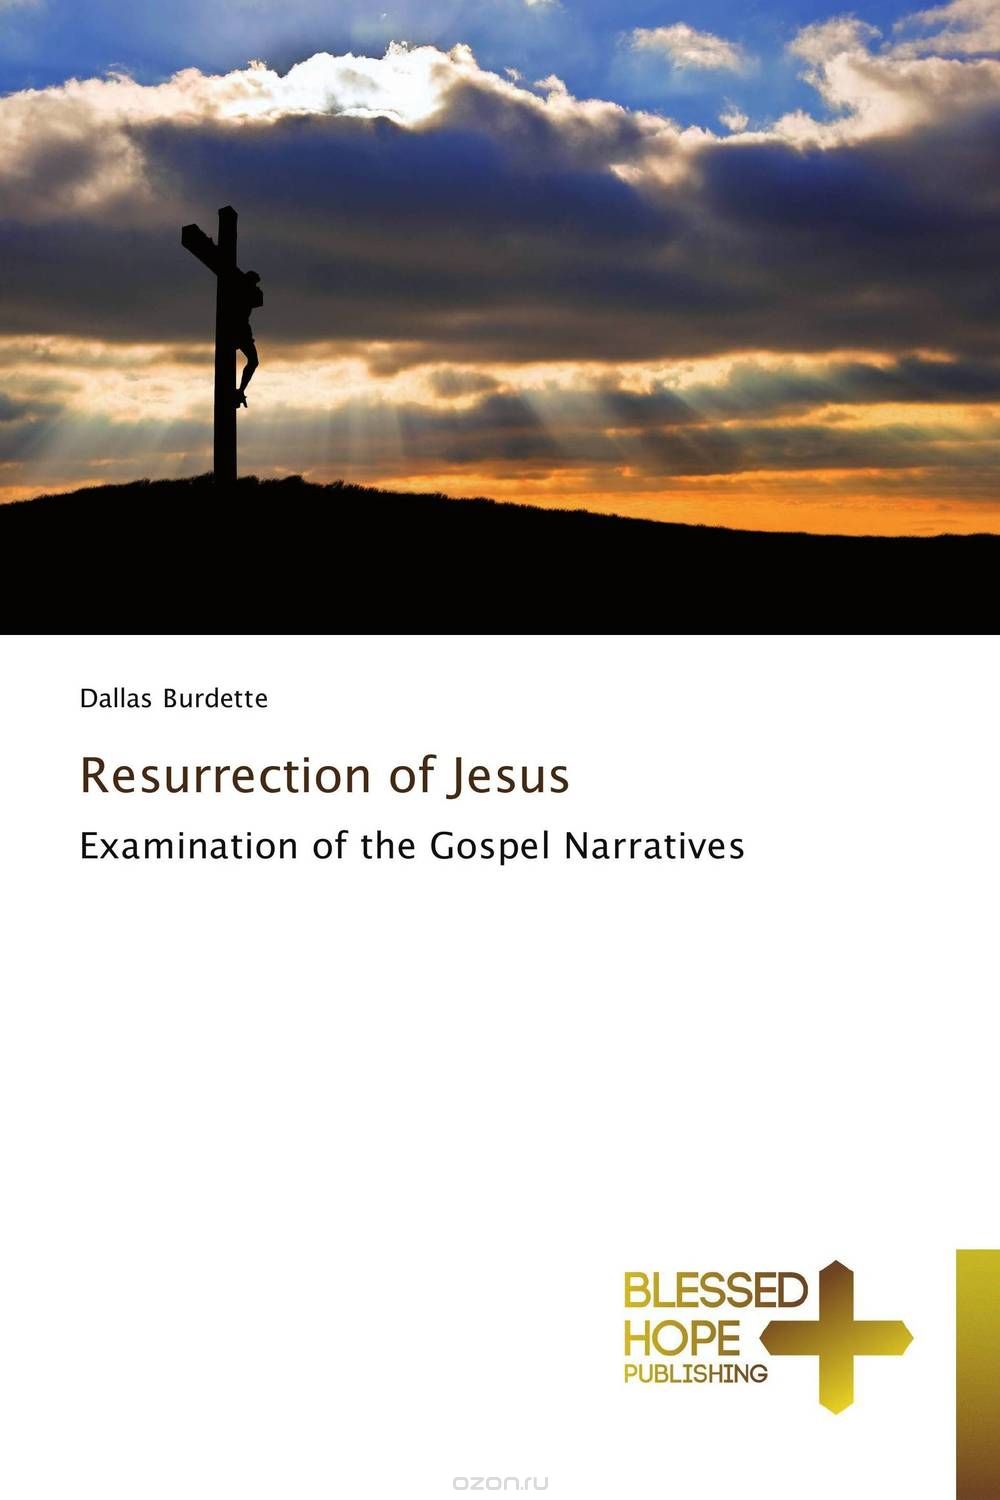 Скачать книгу "Resurrection of Jesus"